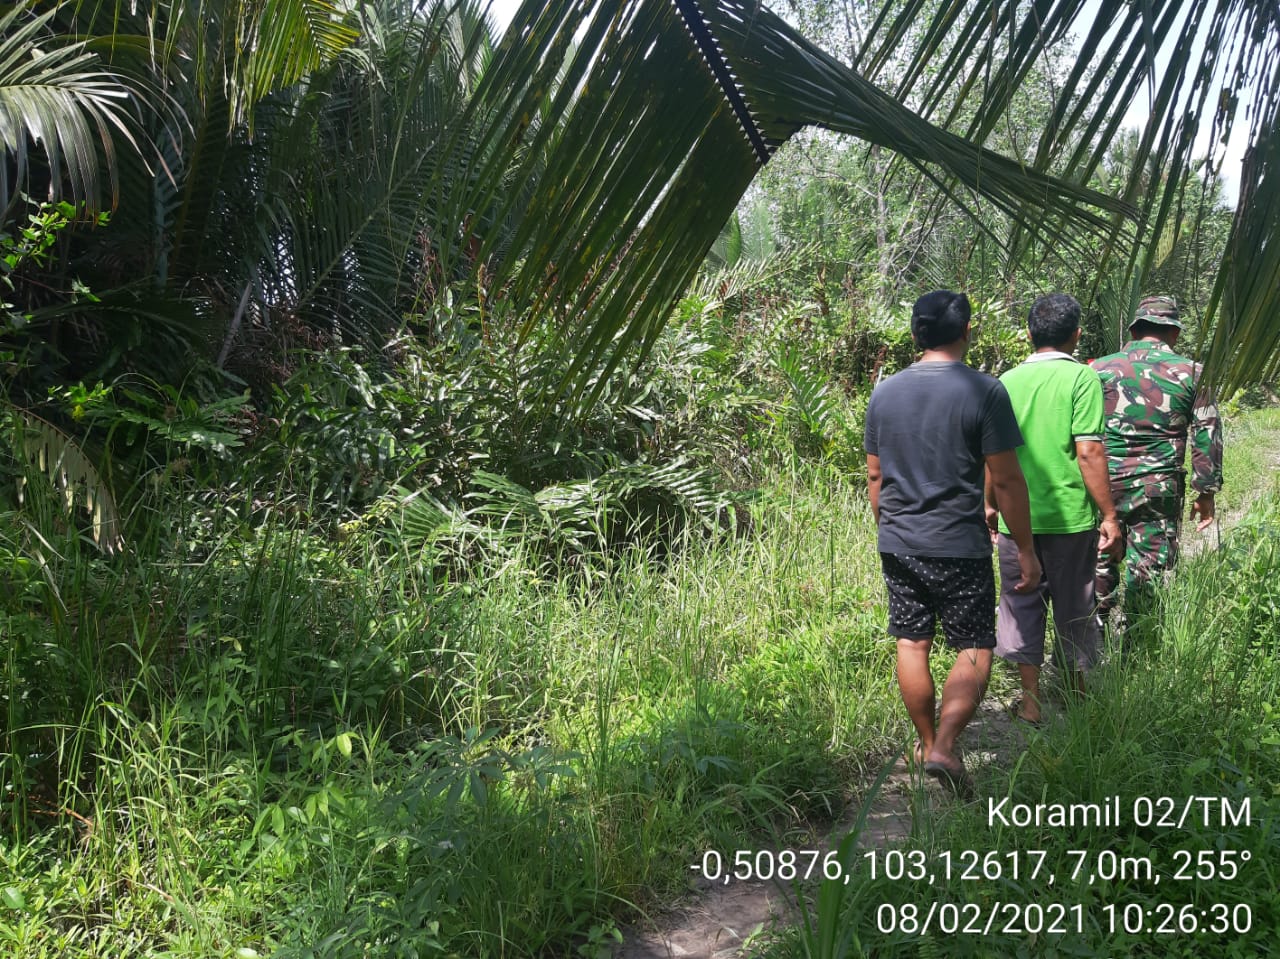 Serda Marhalim Pasaribu Lakukan Patroli Karhutla di Sungai Ambat